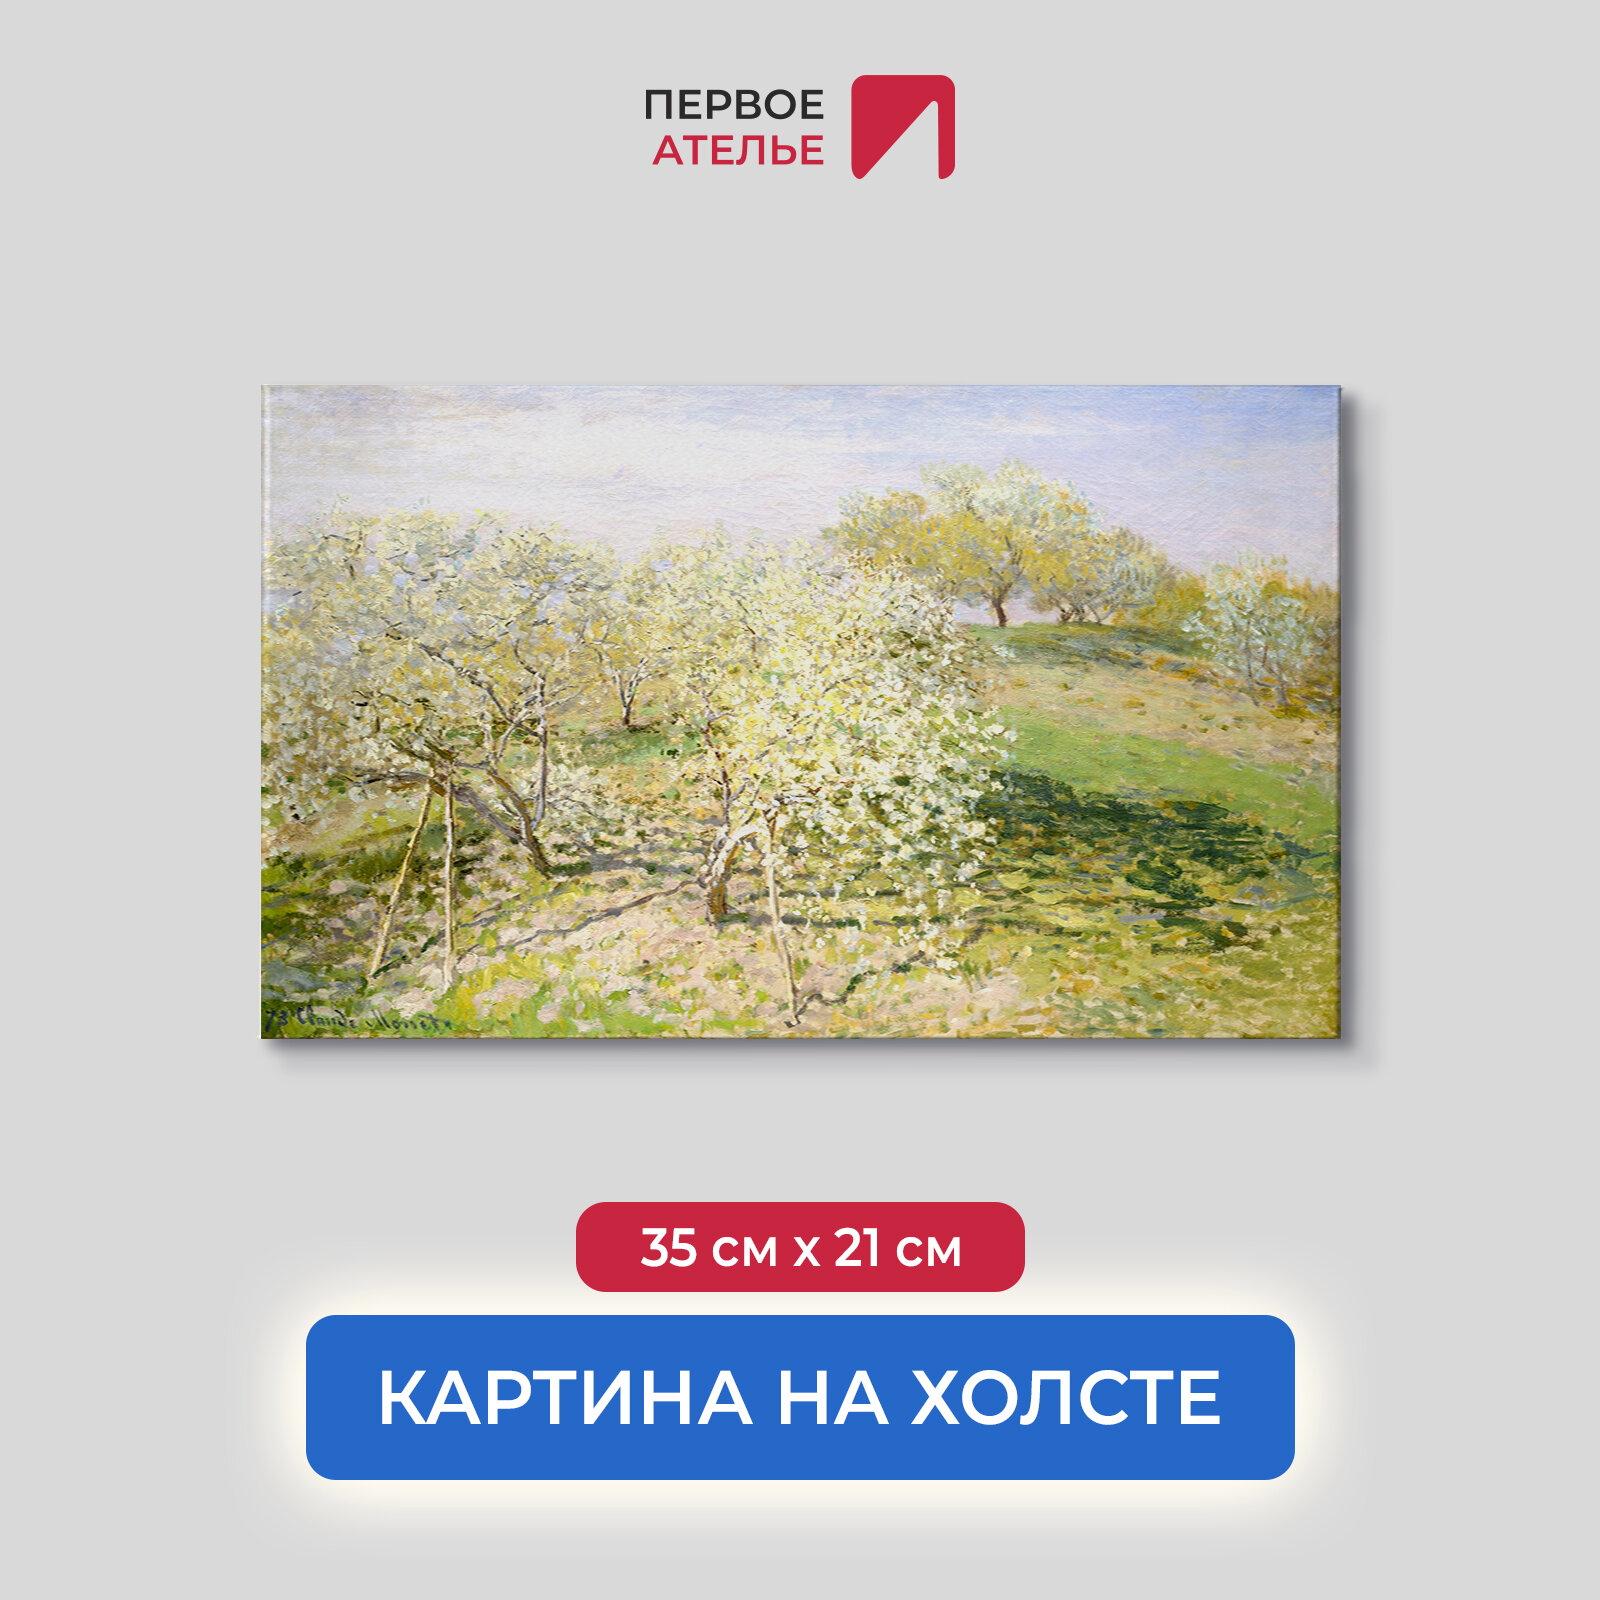 Картина репродукция Клода Моне "Весна (Цветущие фруктовые деревья)" 35х21 см (ШхВ), на холсте